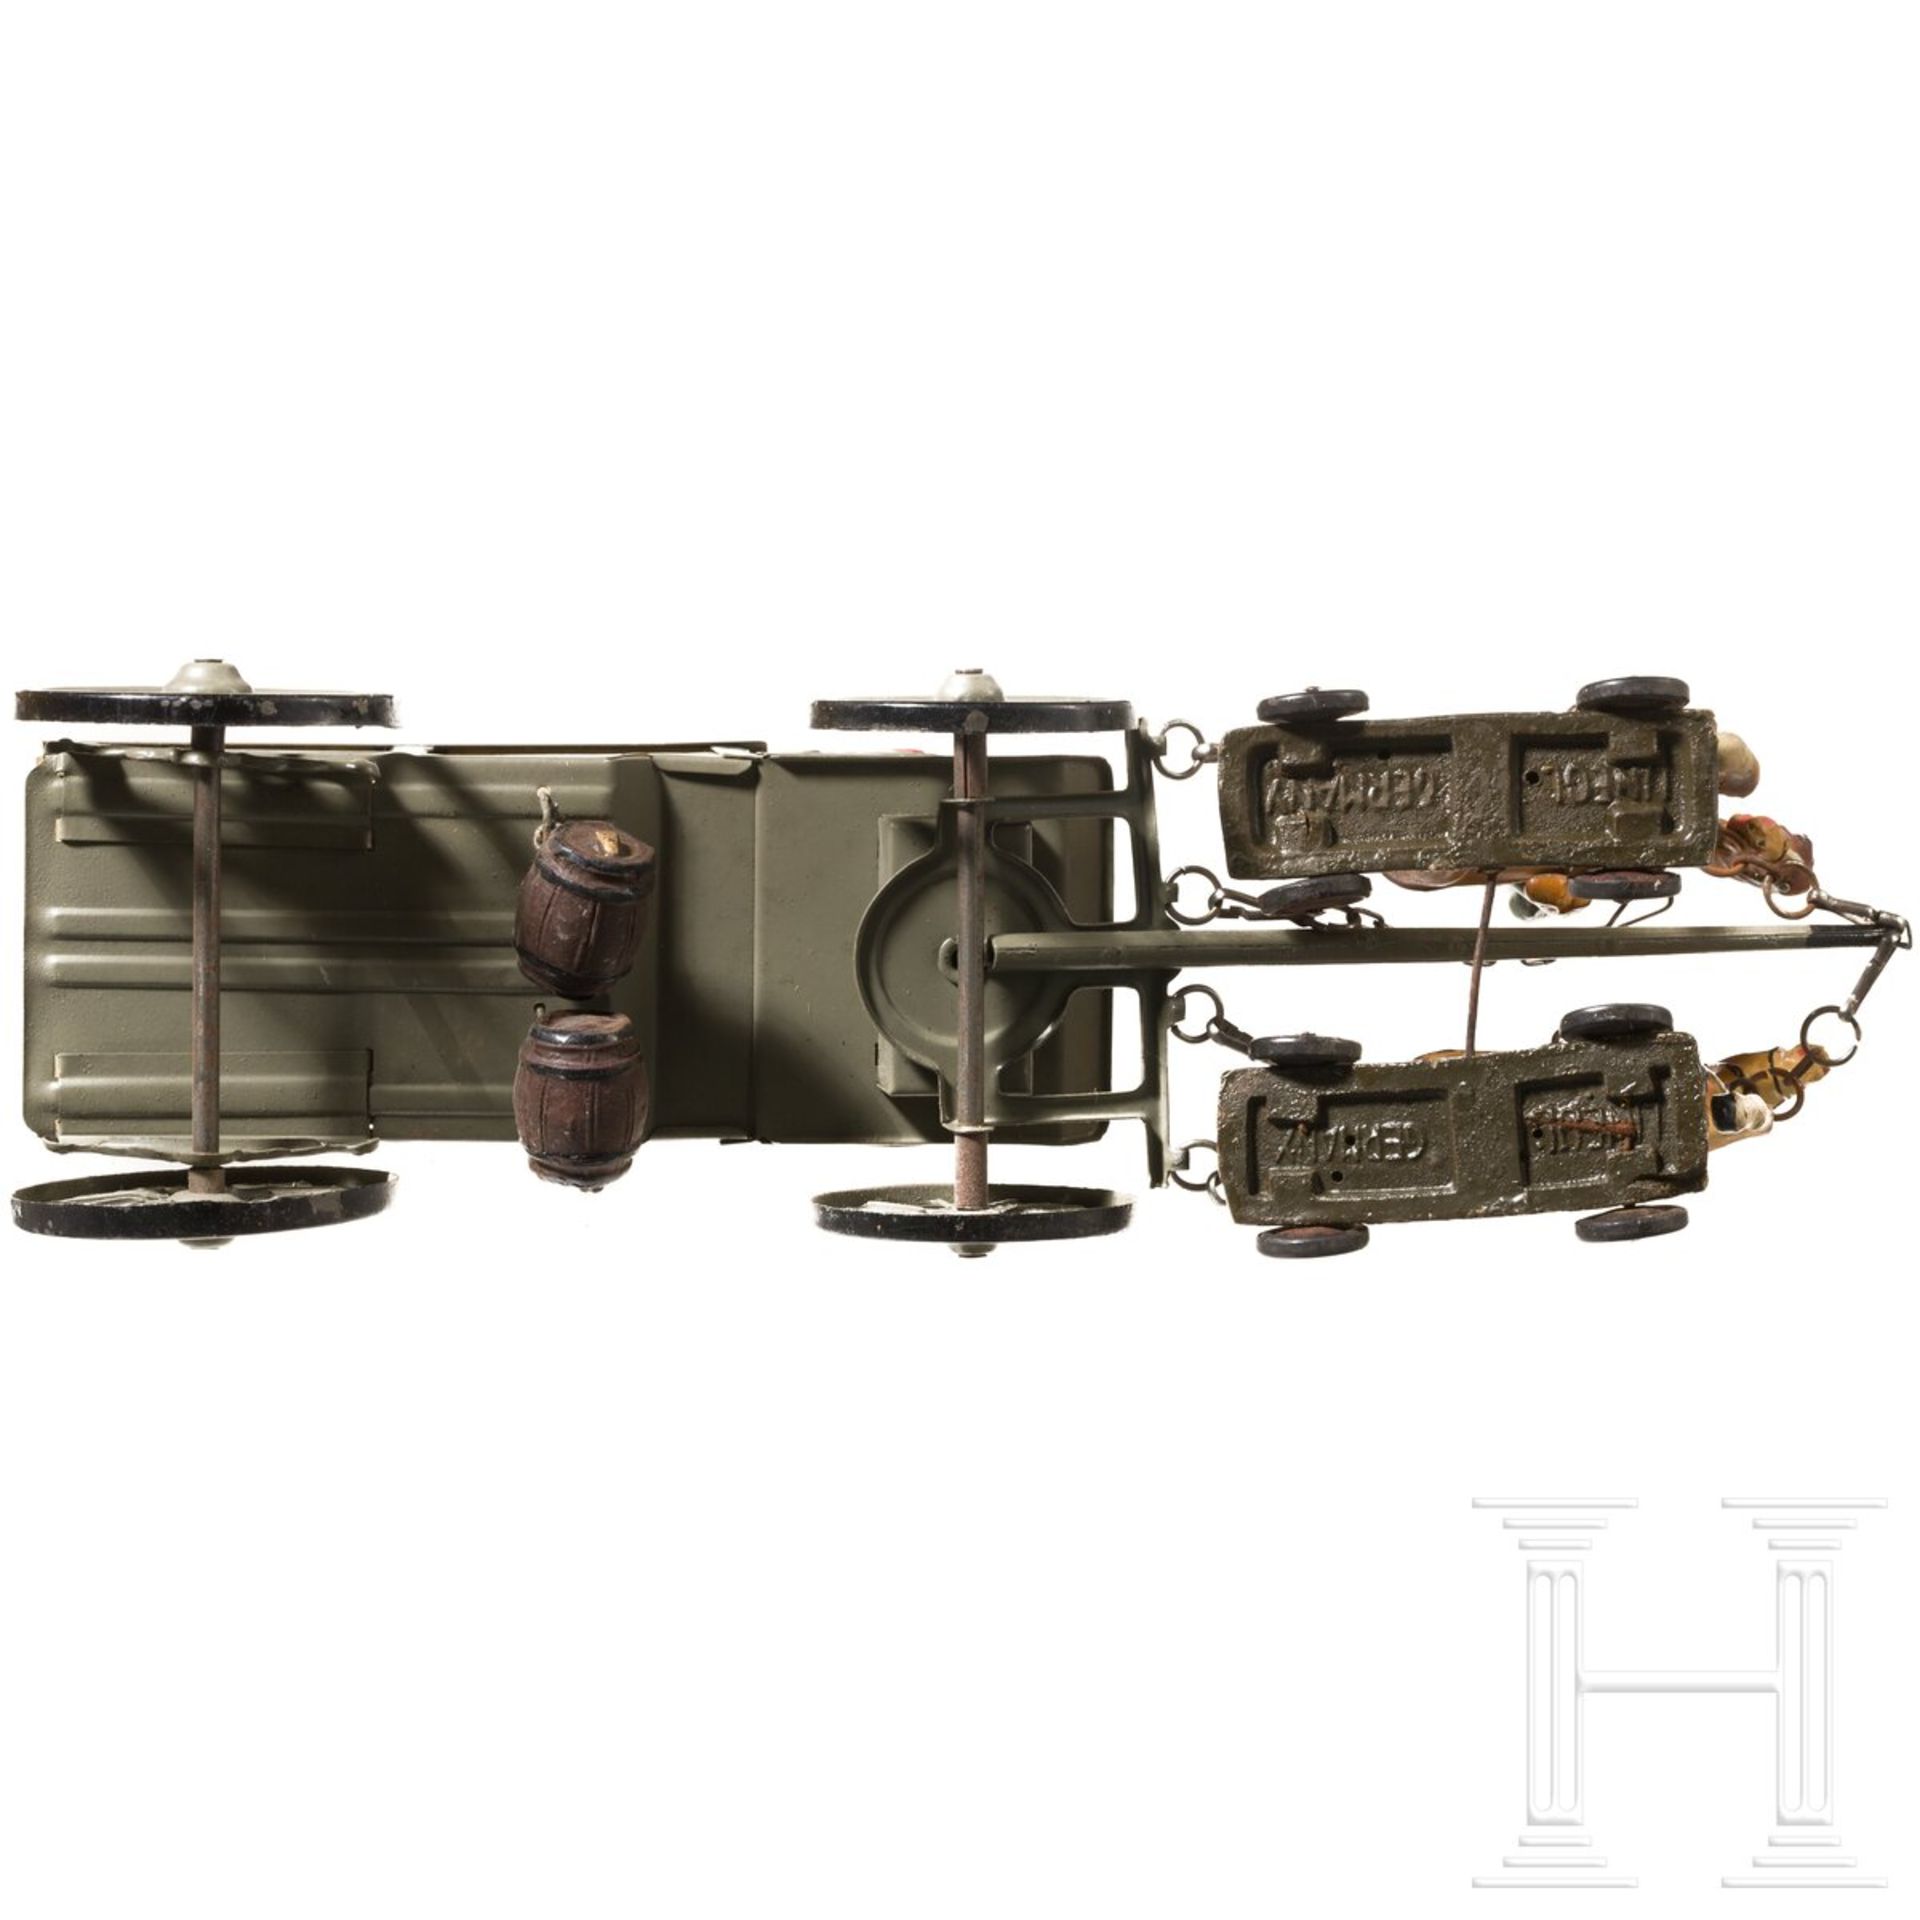 Lineol Sanitätswagen-Gespann 160/K2 mit vier italienischen Soldaten sowie Göso Feldküchengespann - Bild 5 aus 8